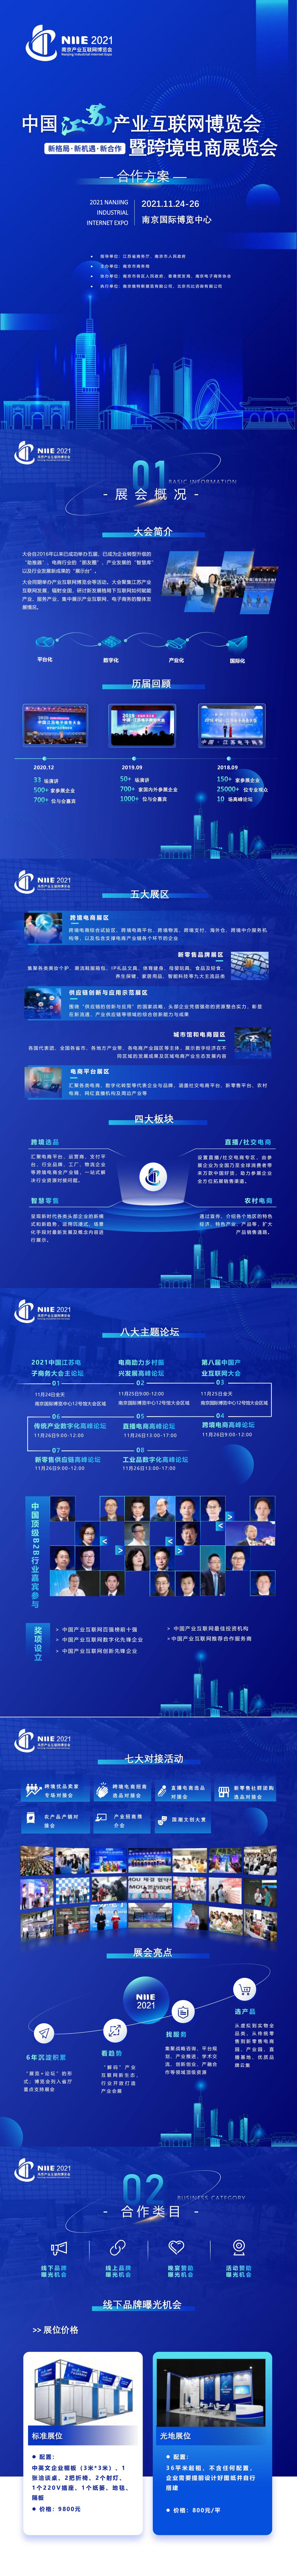 中国江苏产业互联网博览会暨跨境电商展览会